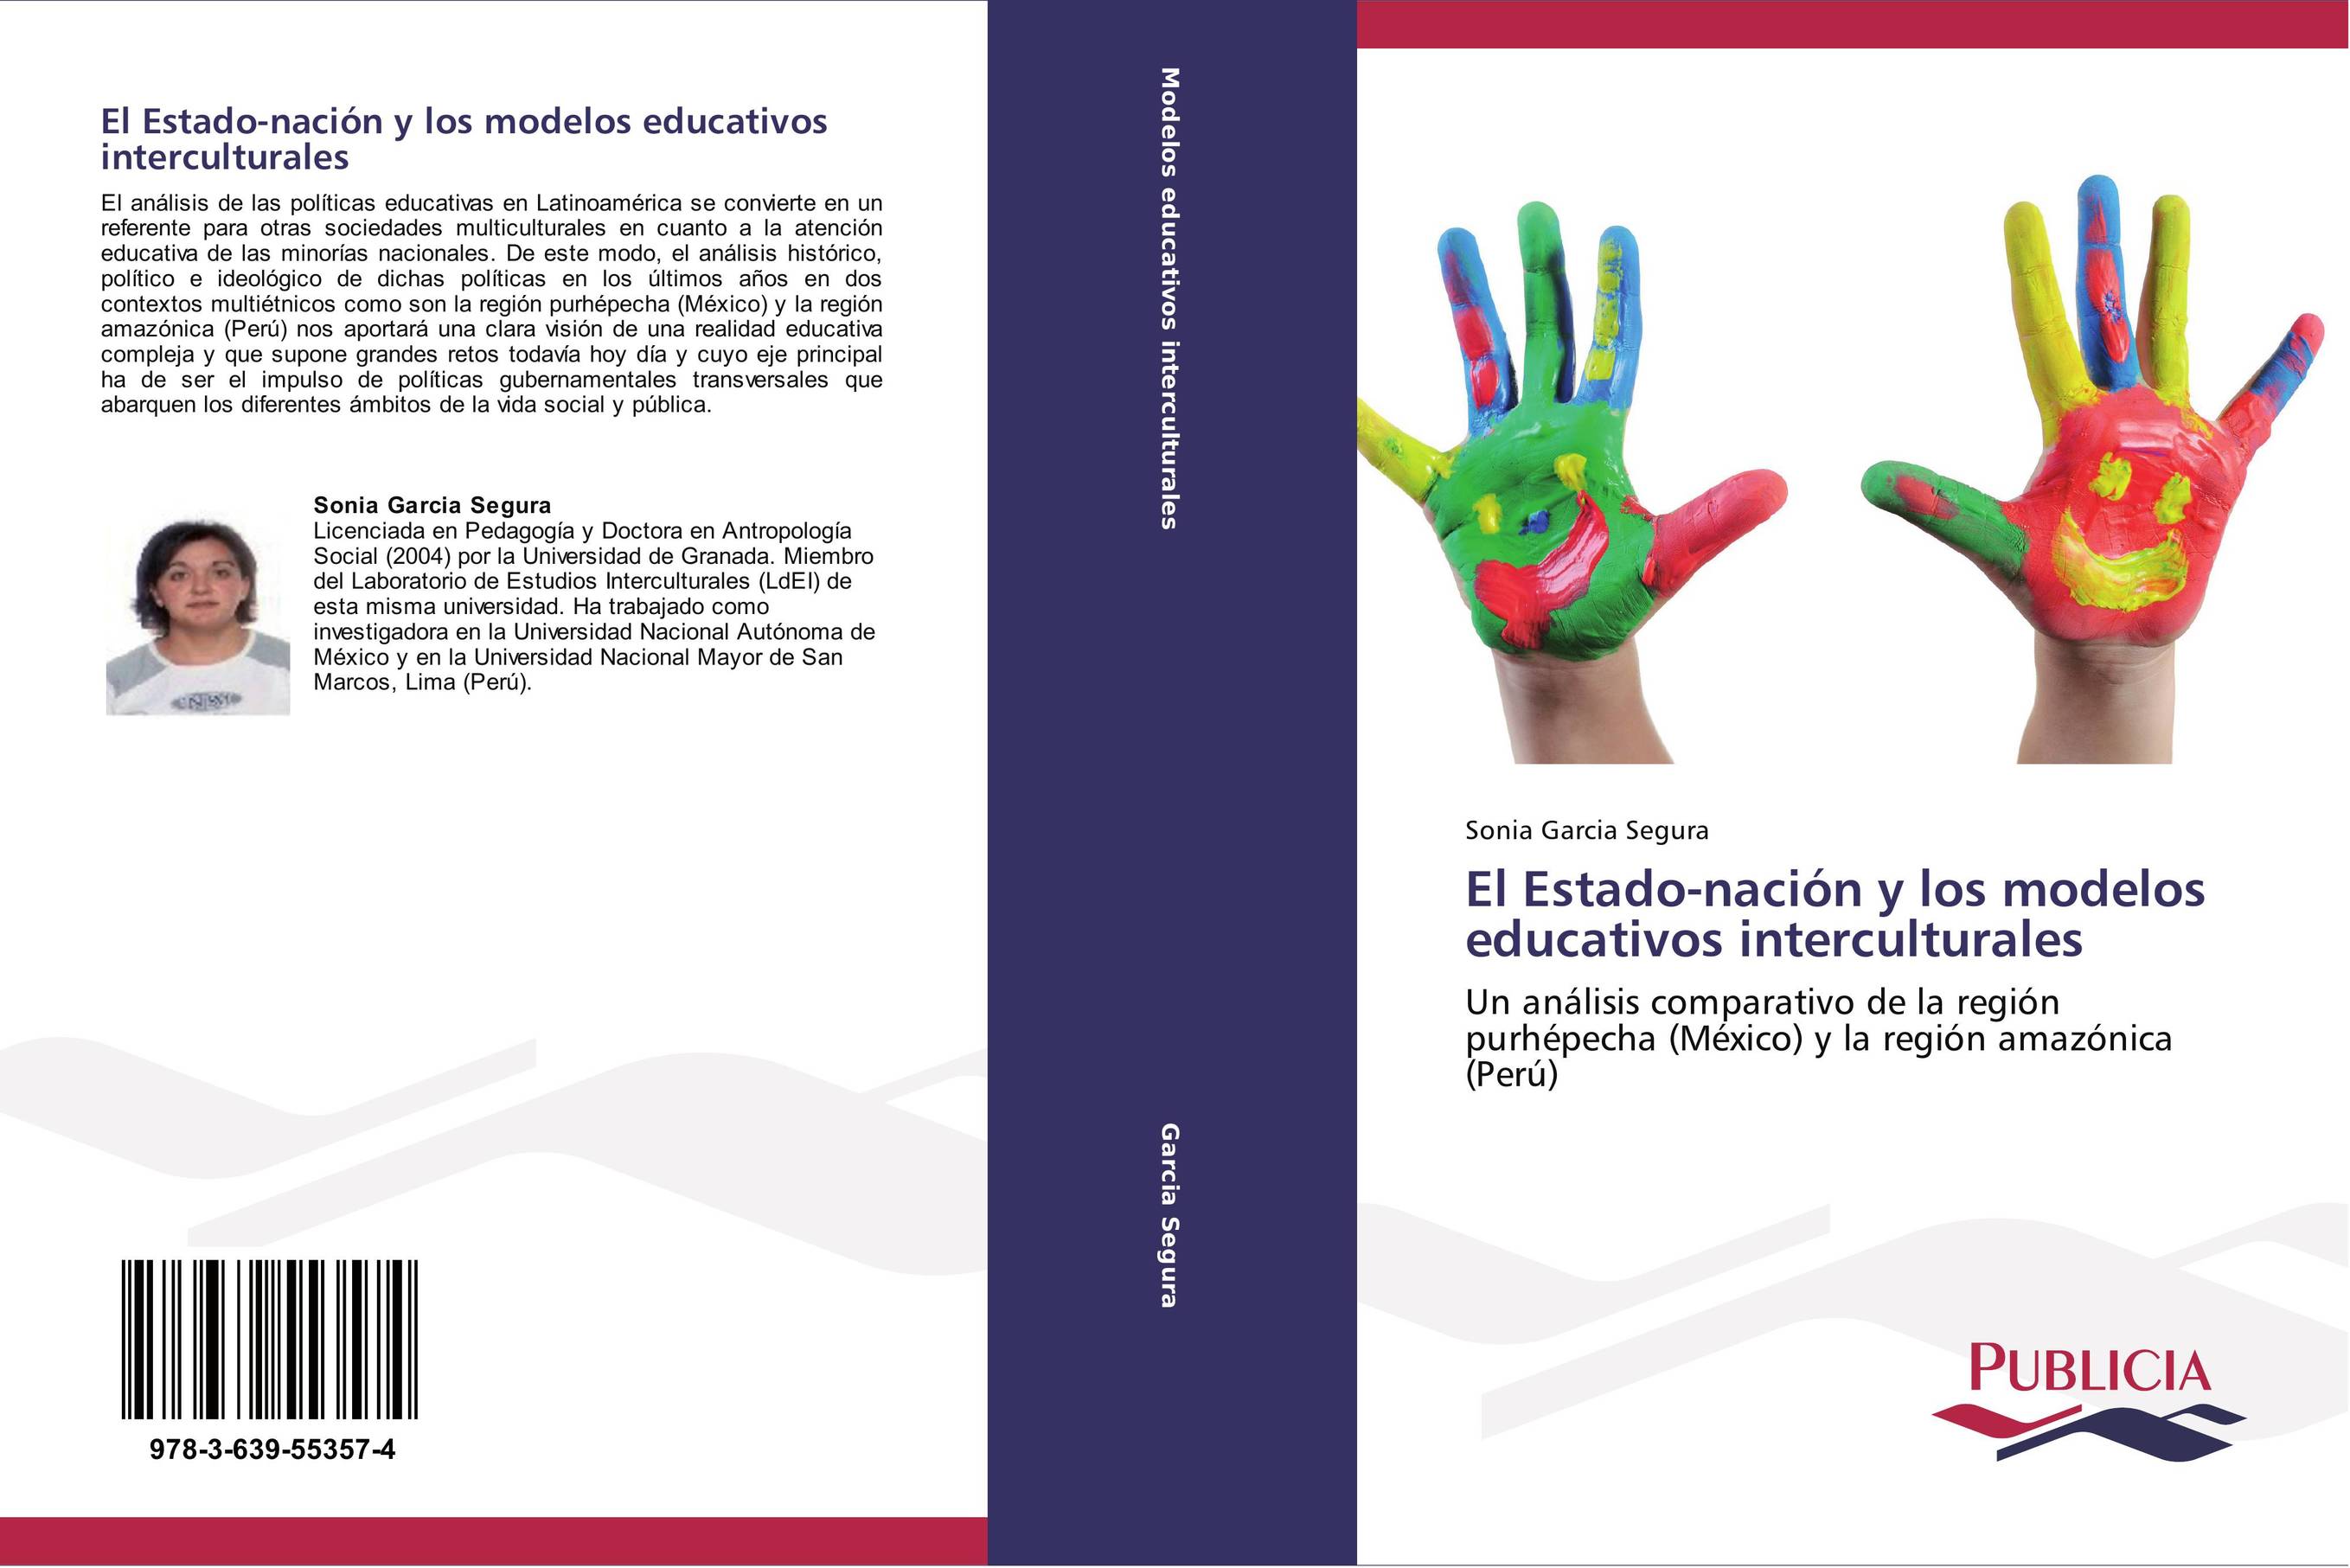 El Estado-nación y los modelos educativos interculturales